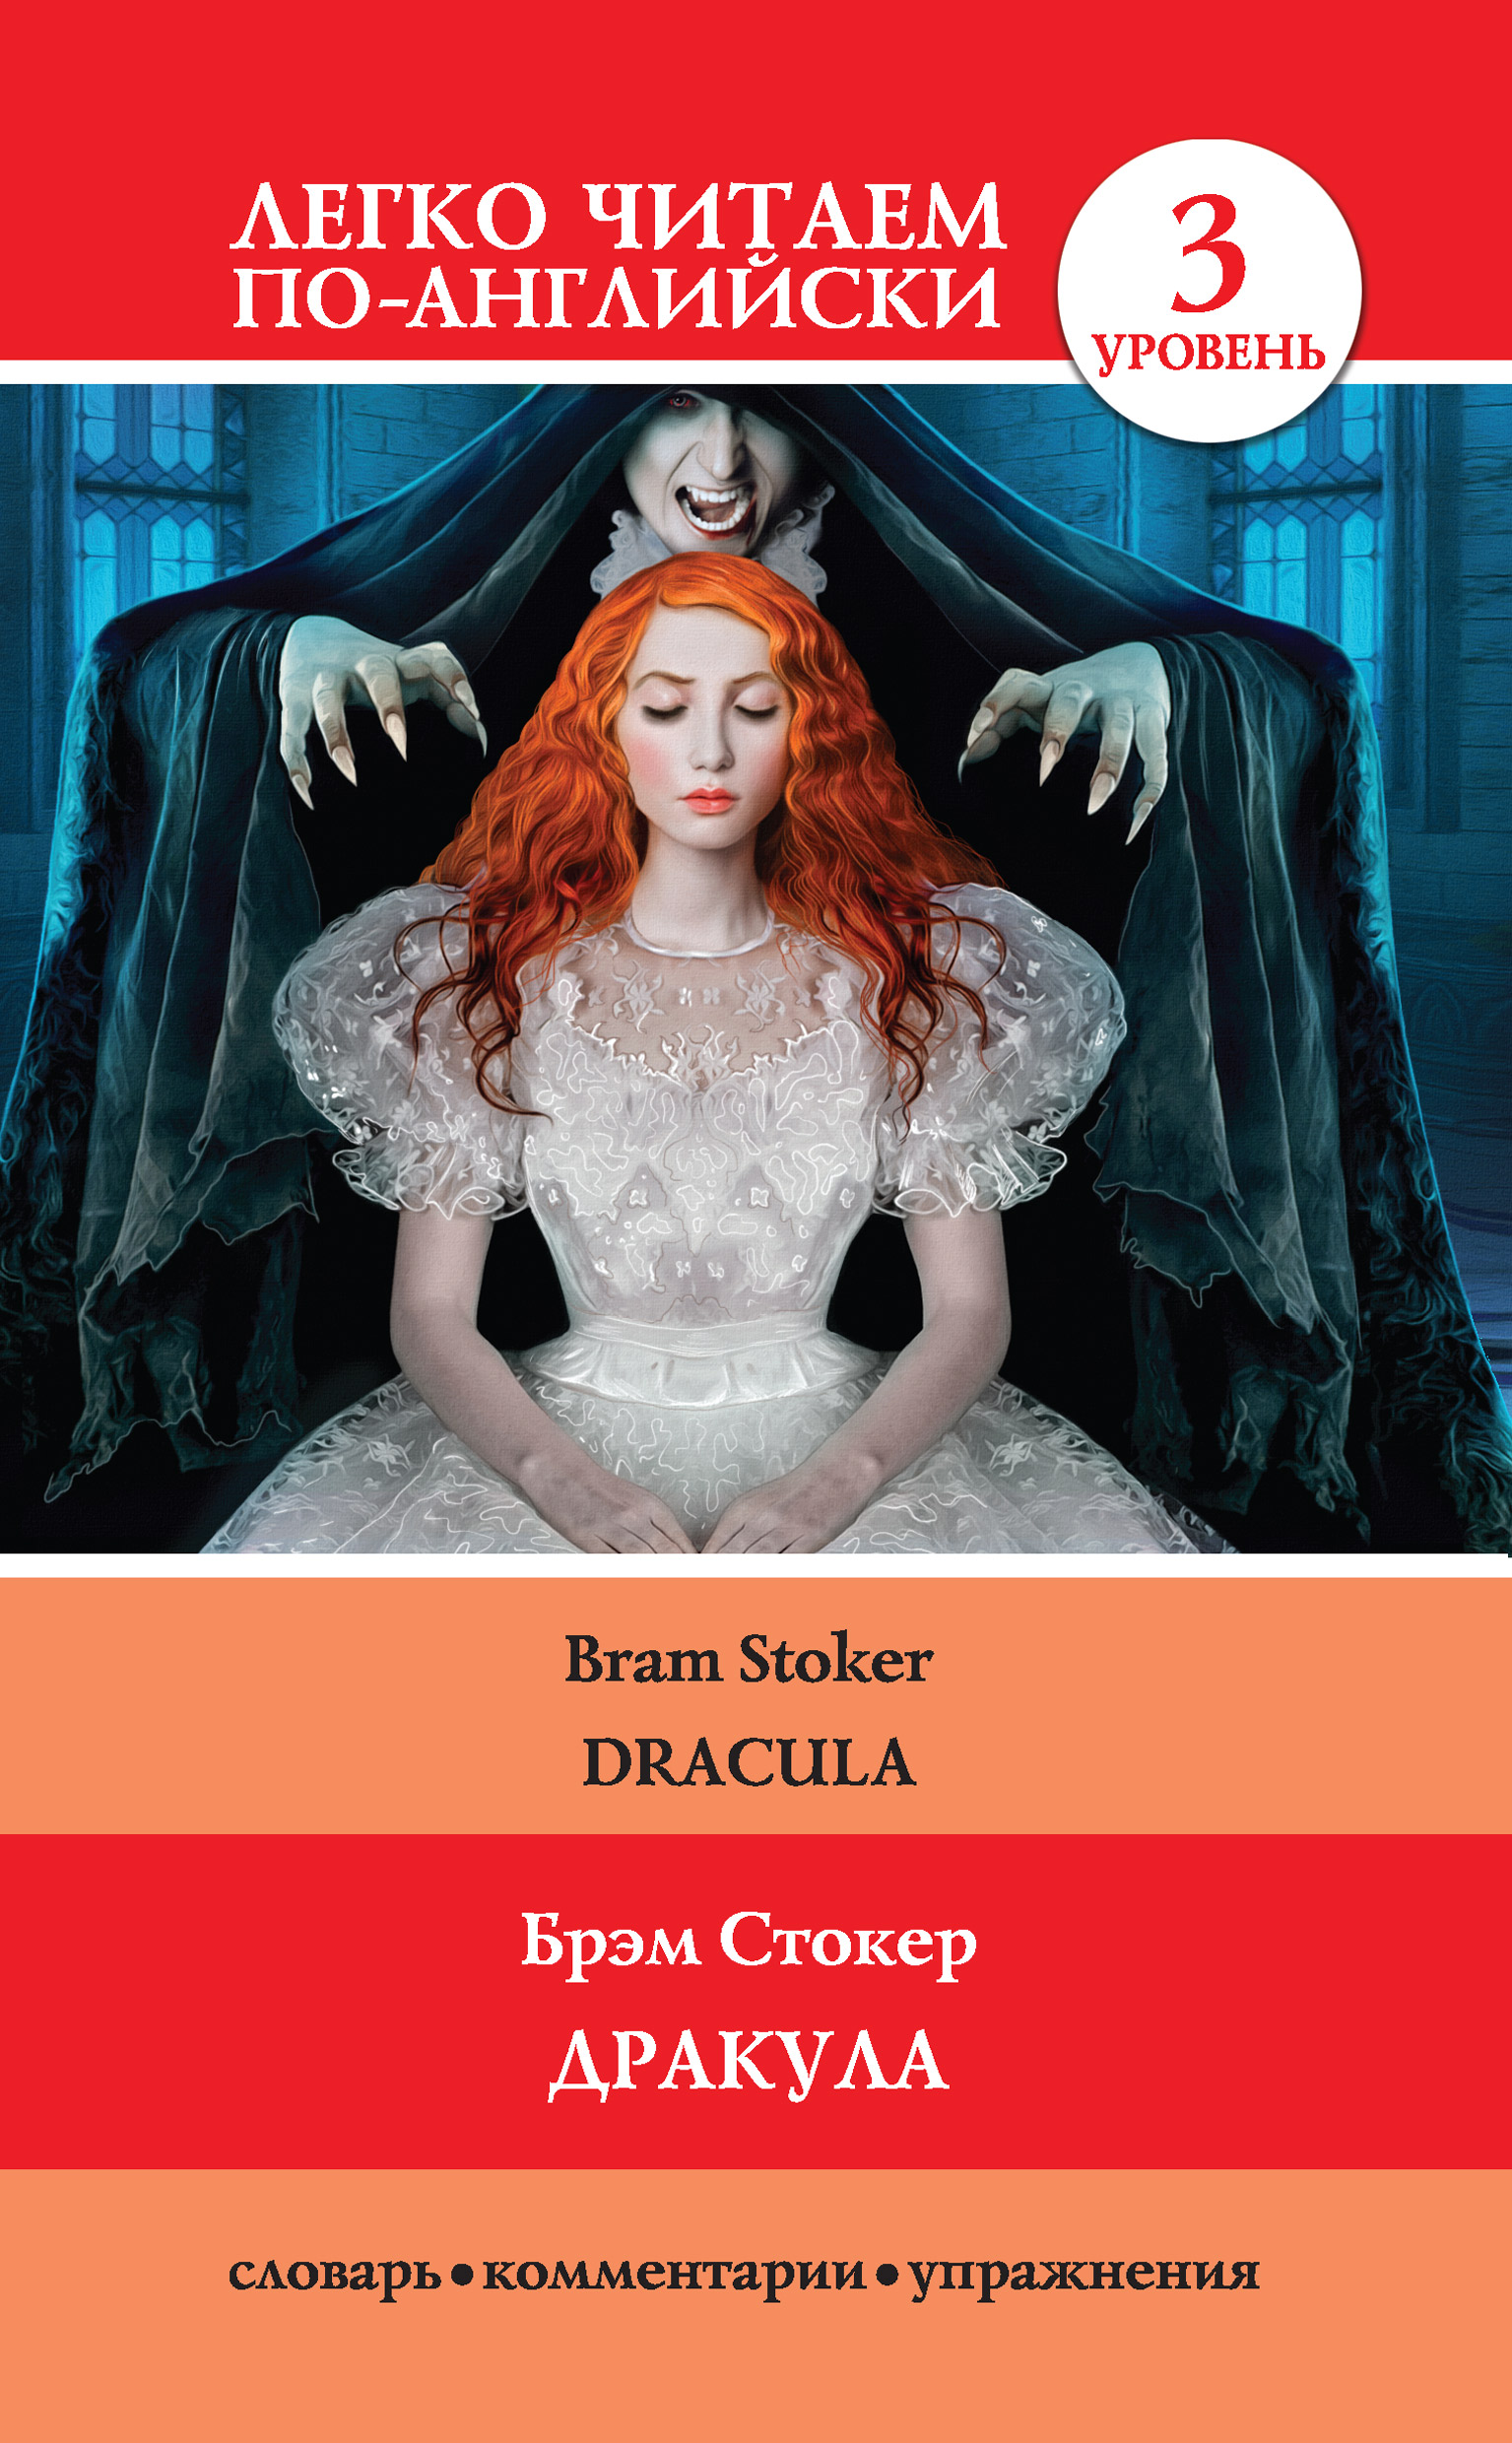 Книга Дракула / Dracula из серии Легко читаем по-английски, созданная Брэм Стокер, может относится к жанру Ужасы и Мистика, Иностранные языки. Стоимость электронной книги Дракула / Dracula с идентификатором 27345518 составляет 89.90 руб.